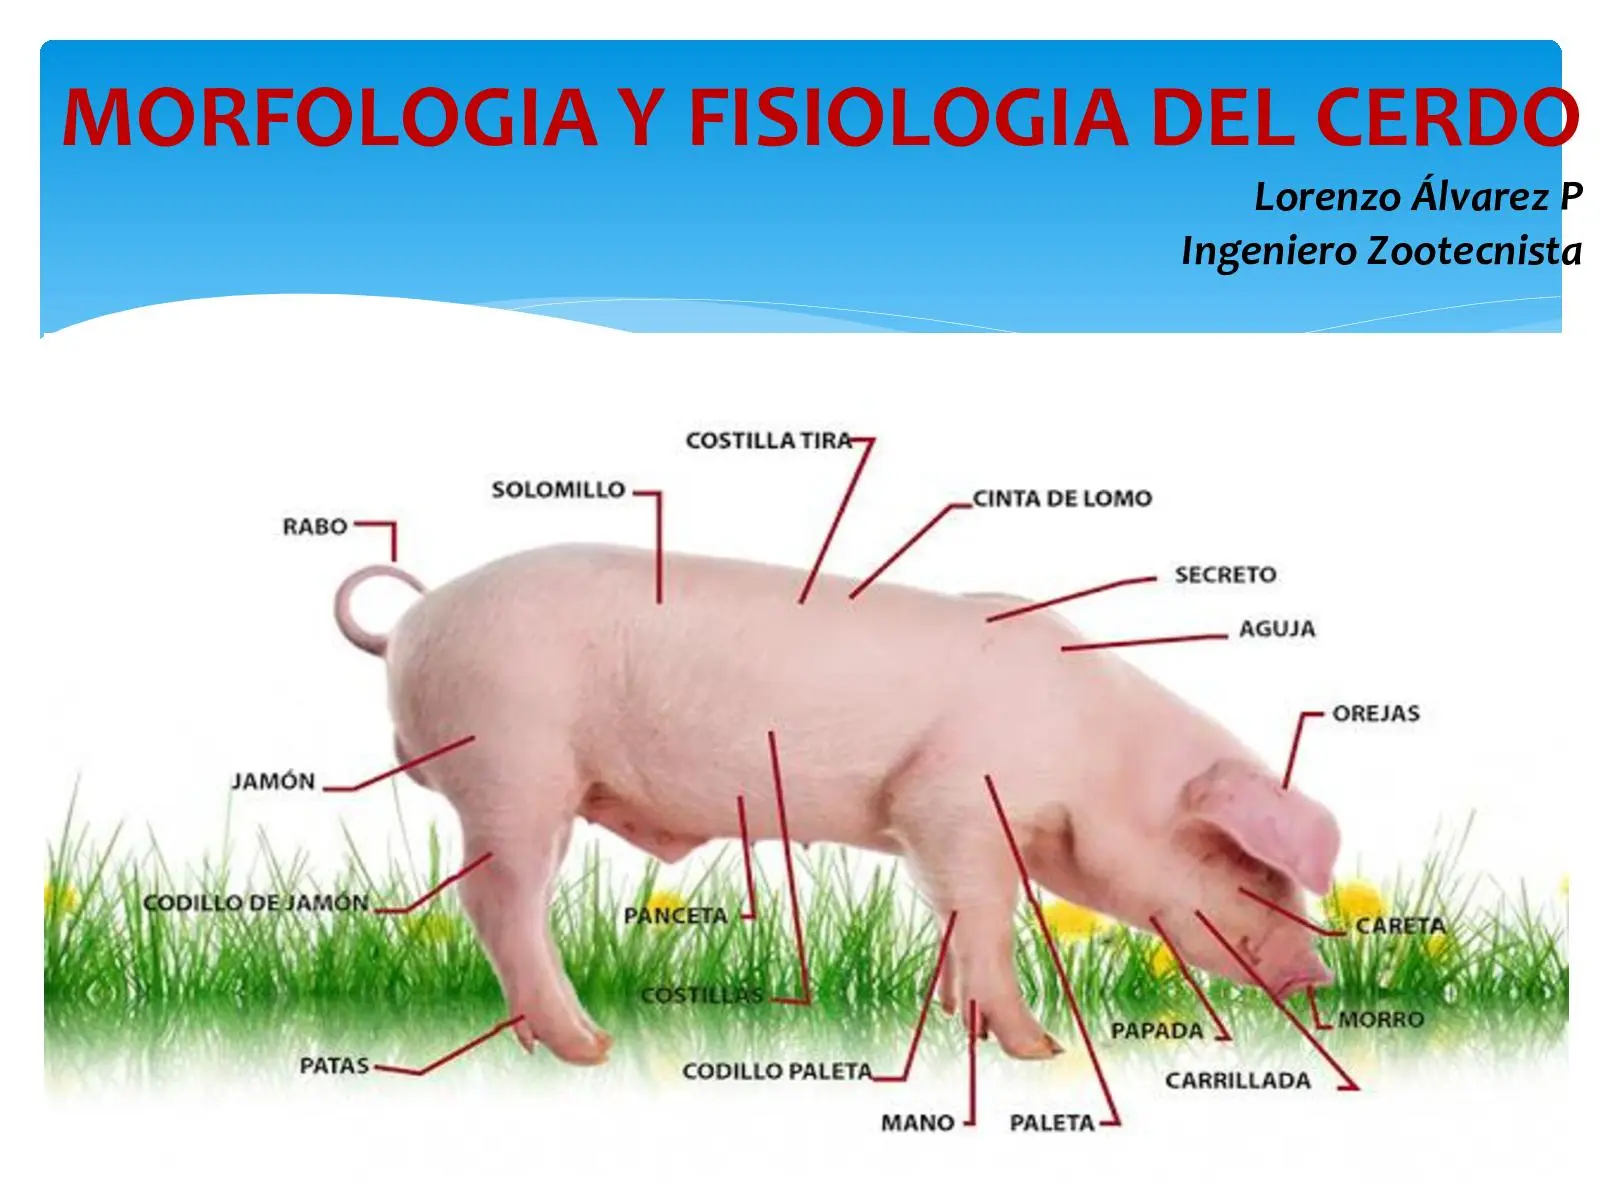 anatomía del cerdo resumen - Cómo está formado el cerdo